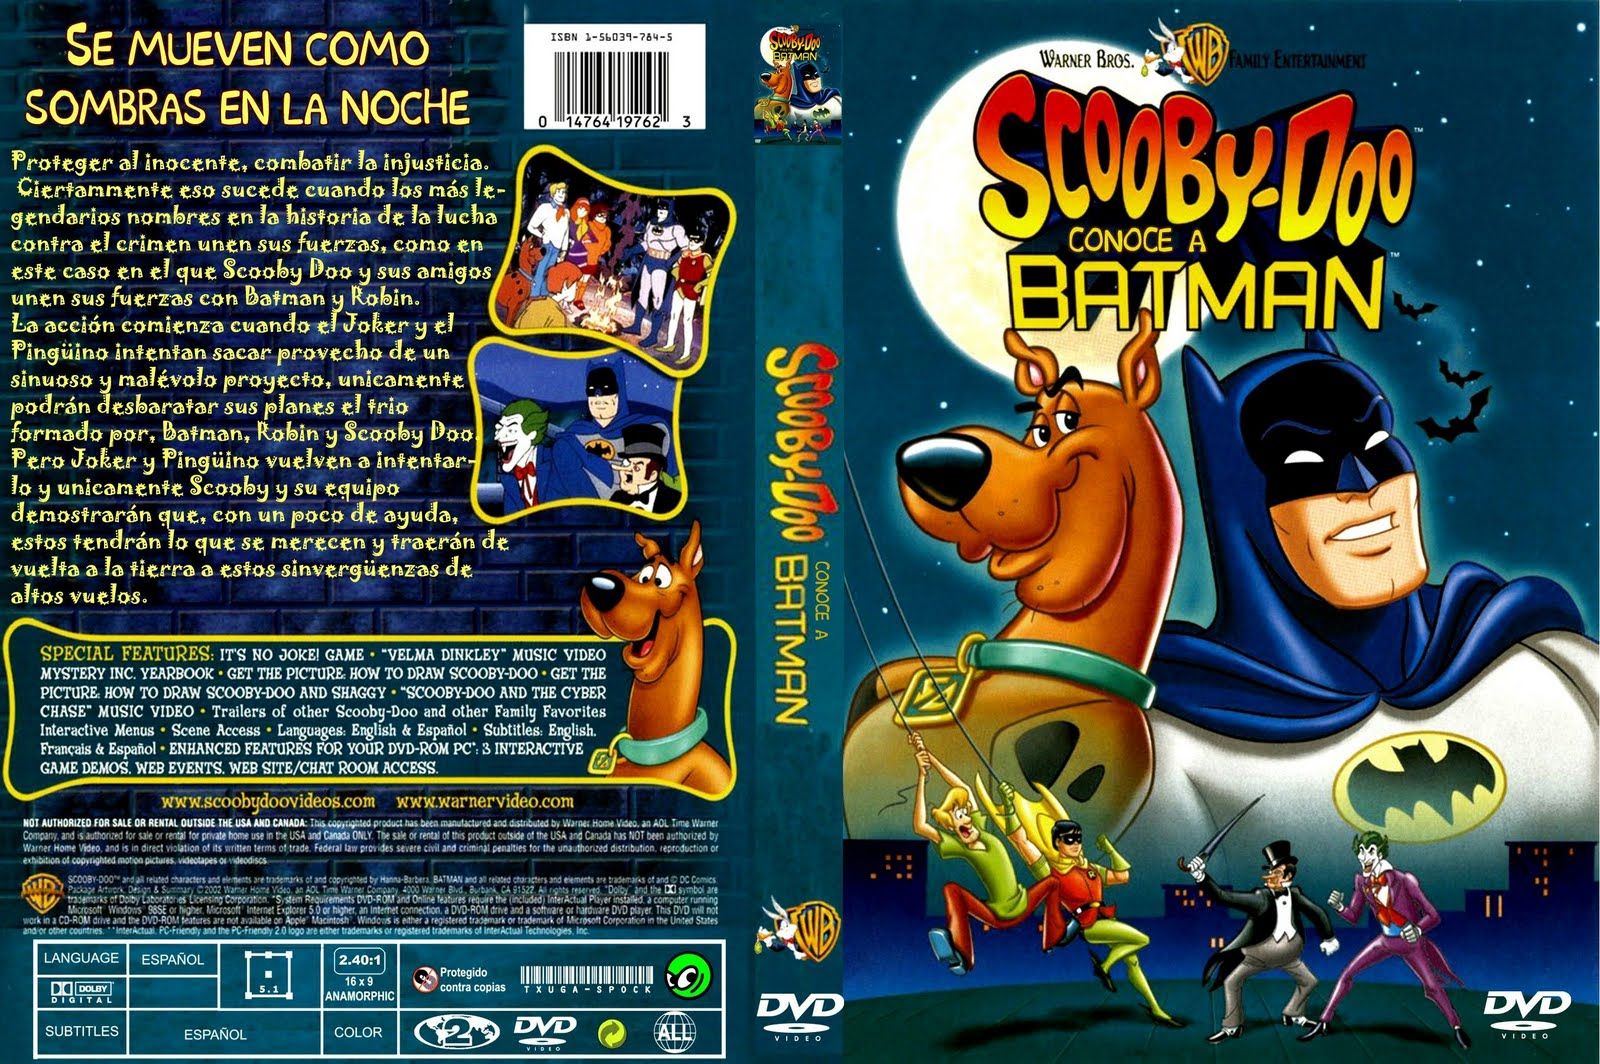 1 2106 - Scooby Doo conoce a Batman Dvdrip Español